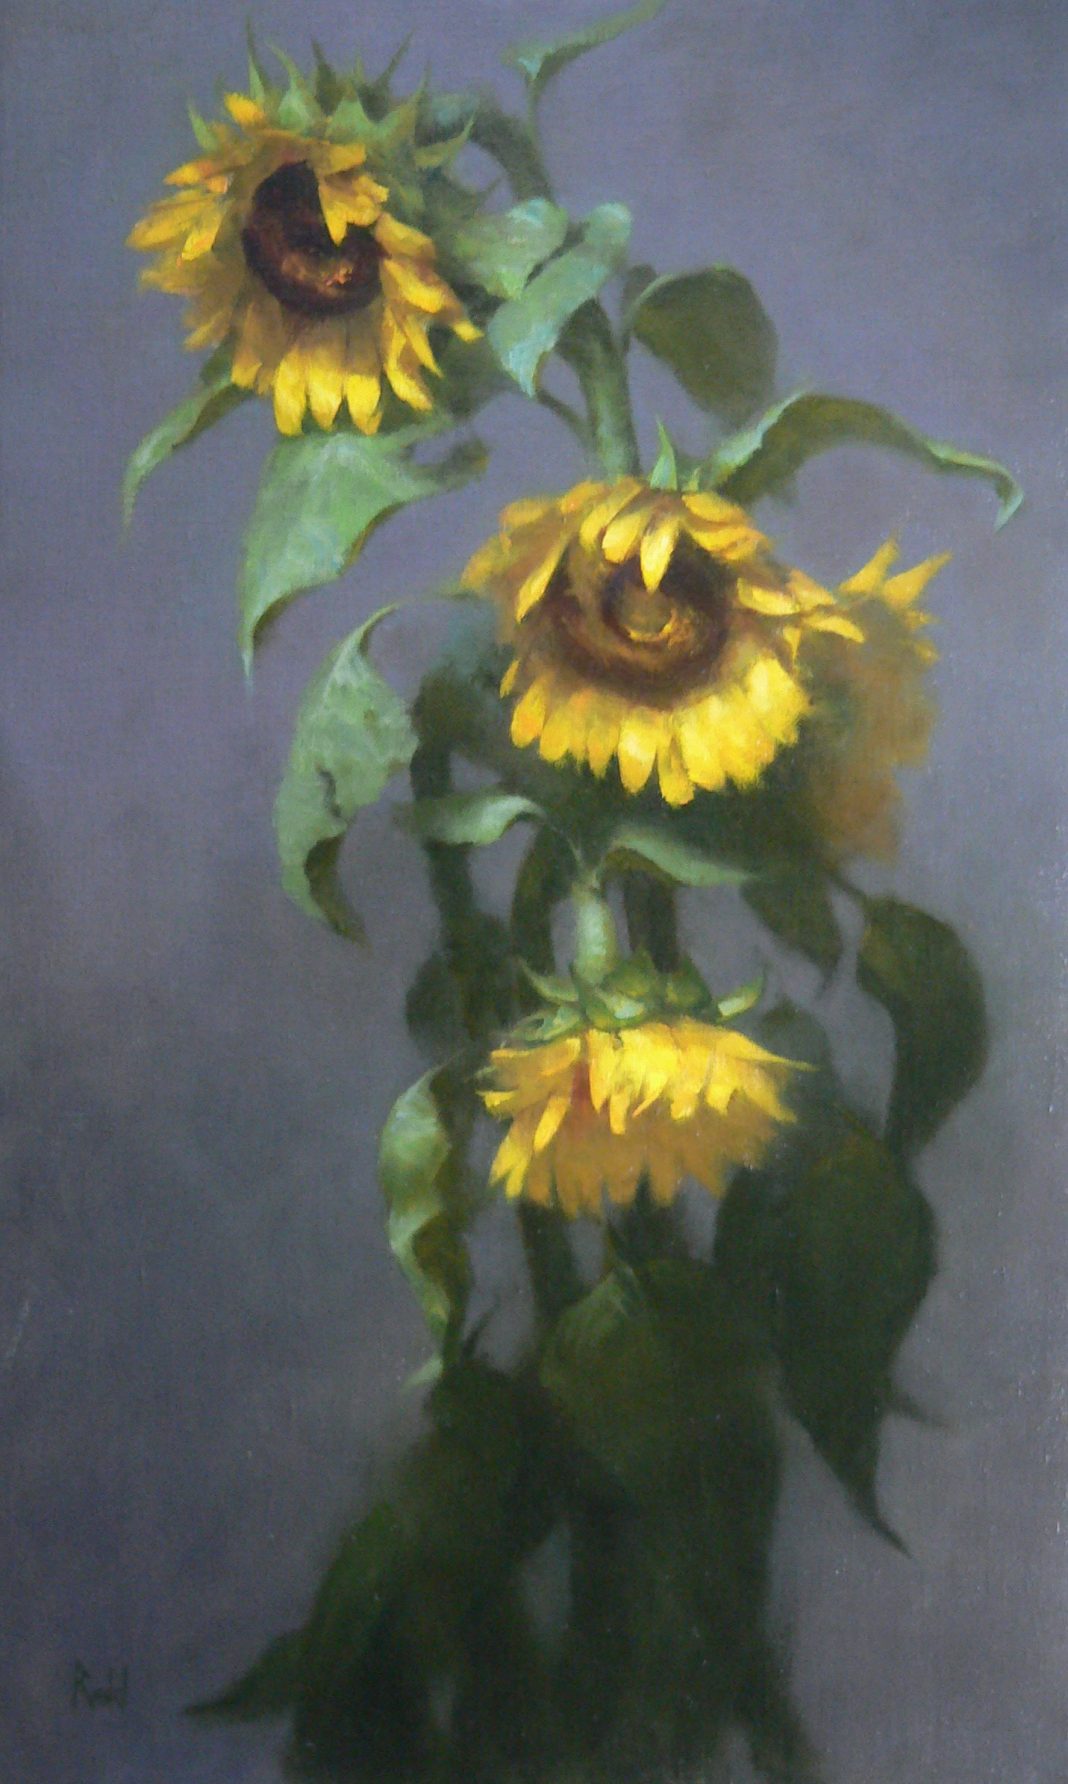 David Riedel Sunflowers floral flower plant seed still-life stilllife still life oil painting